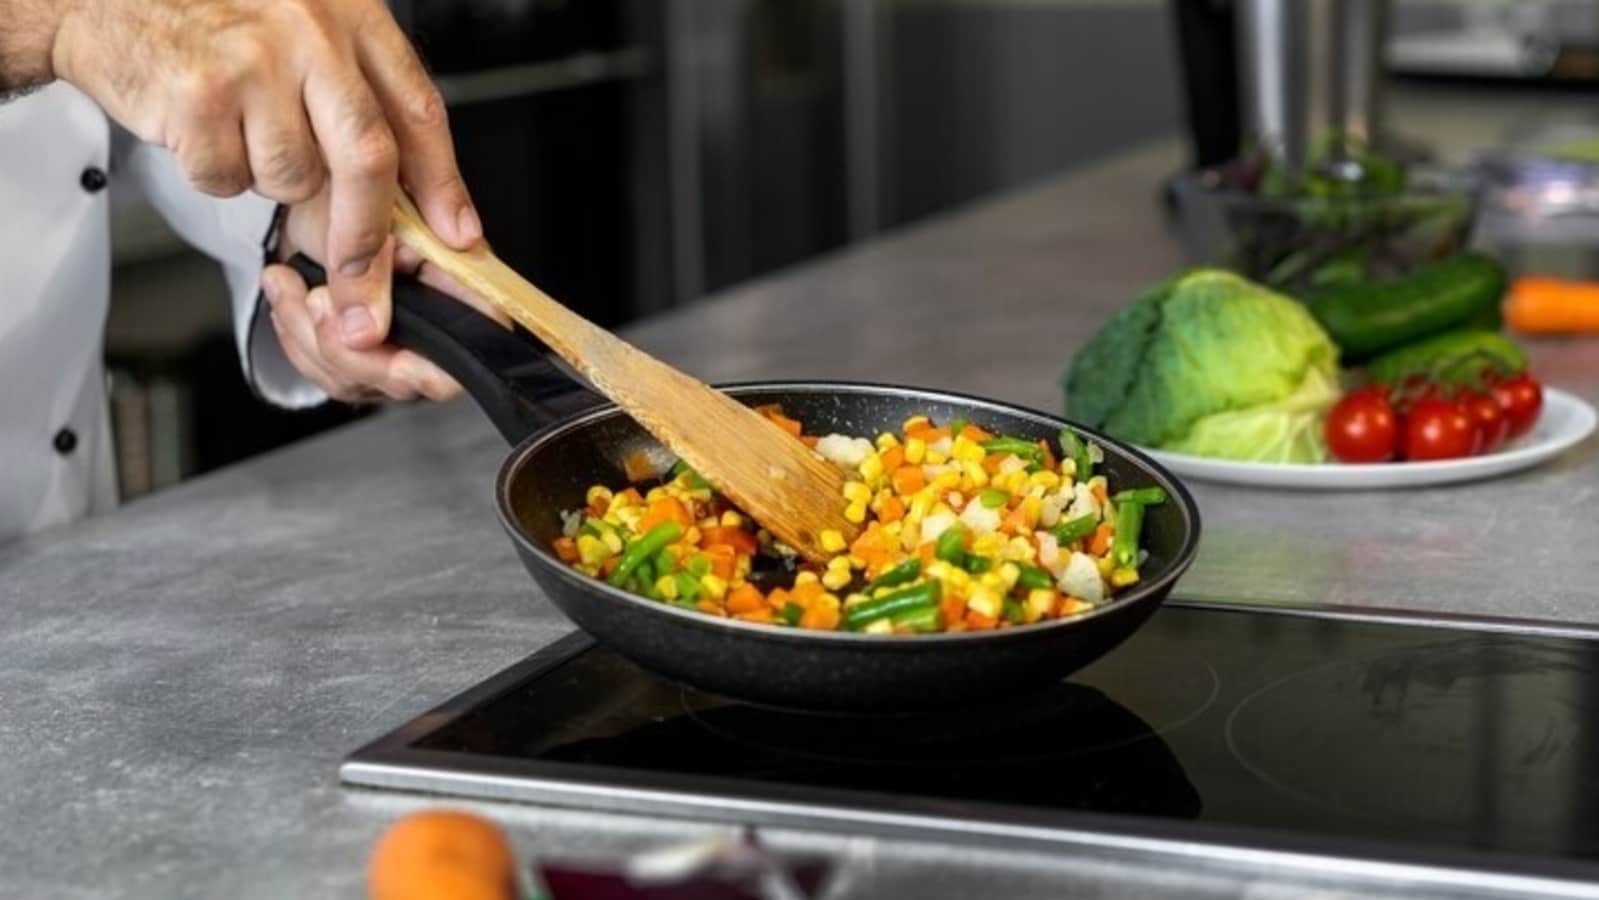 Przegrzanie naczyń kuchennych z powłoką nieprzywierającą jest ryzykowne, mówią wytyczne ICMR. Oto, jak bezpiecznie z nich korzystać |  Zdrowie